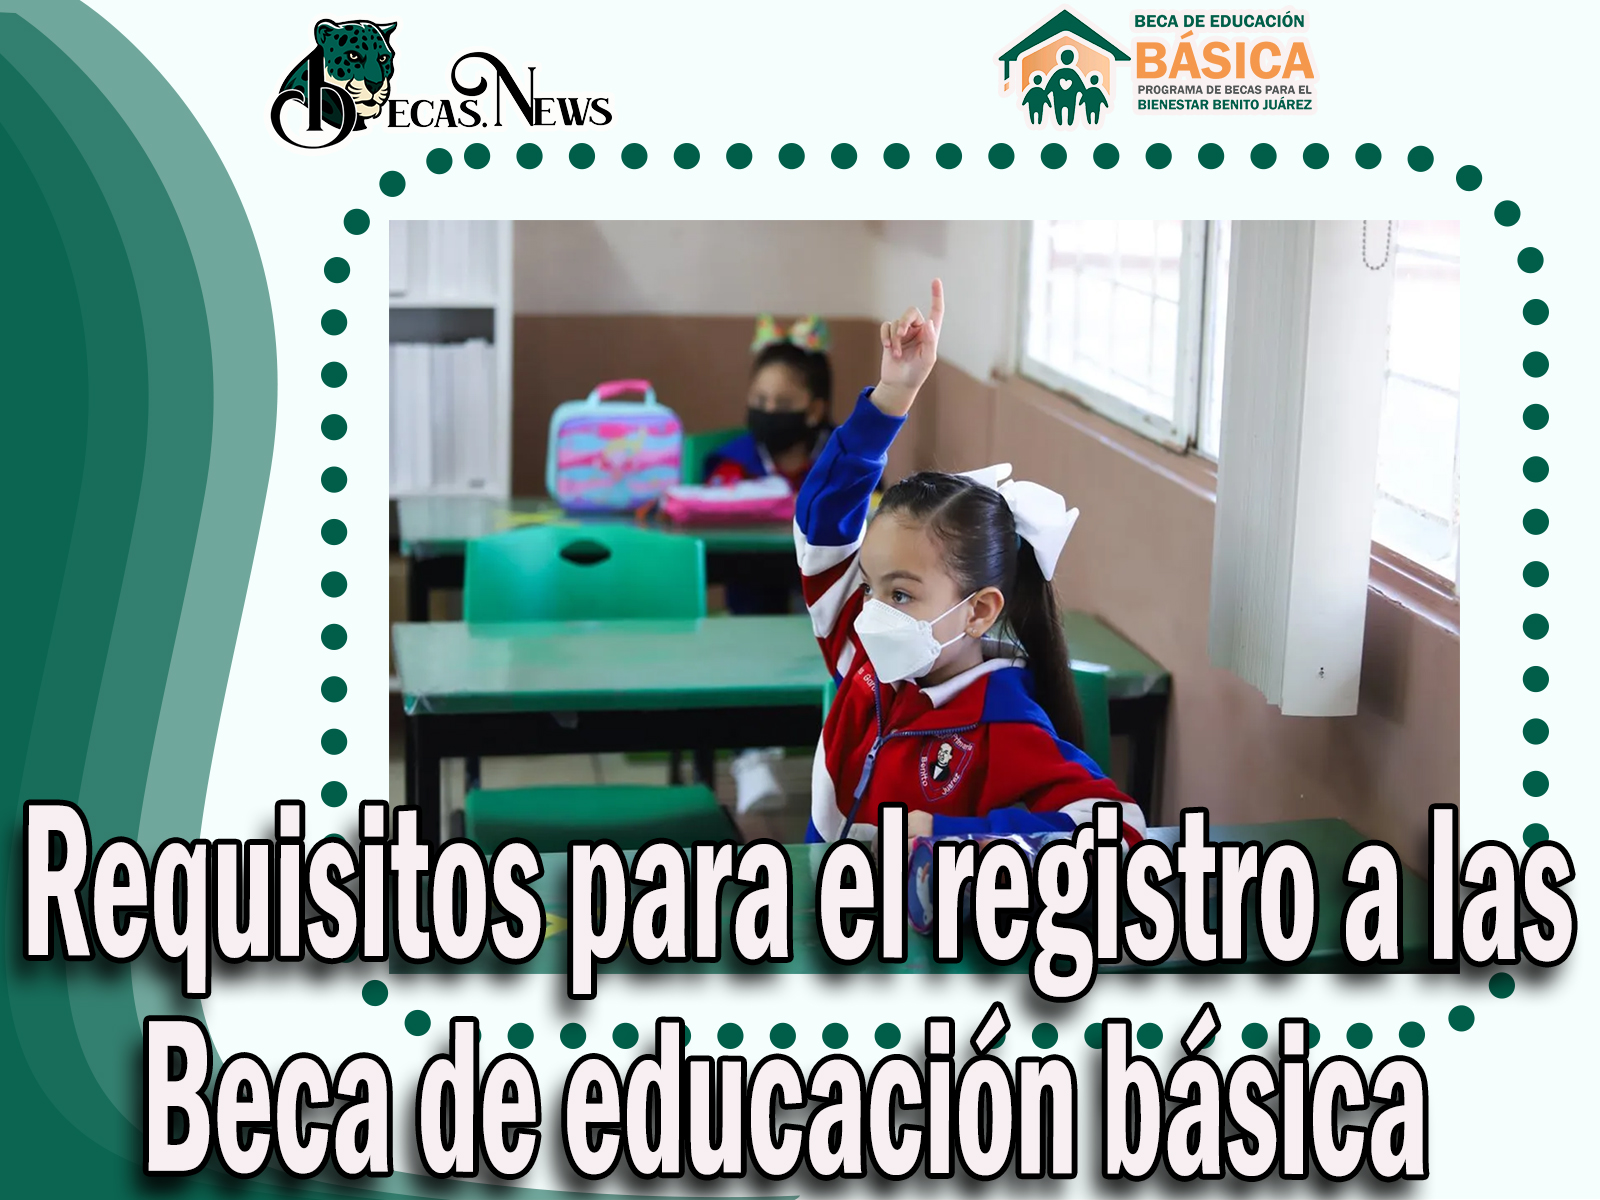 Beca Benito Juárez: Conoce los requisitos para el registro para la Beca de educación básica 